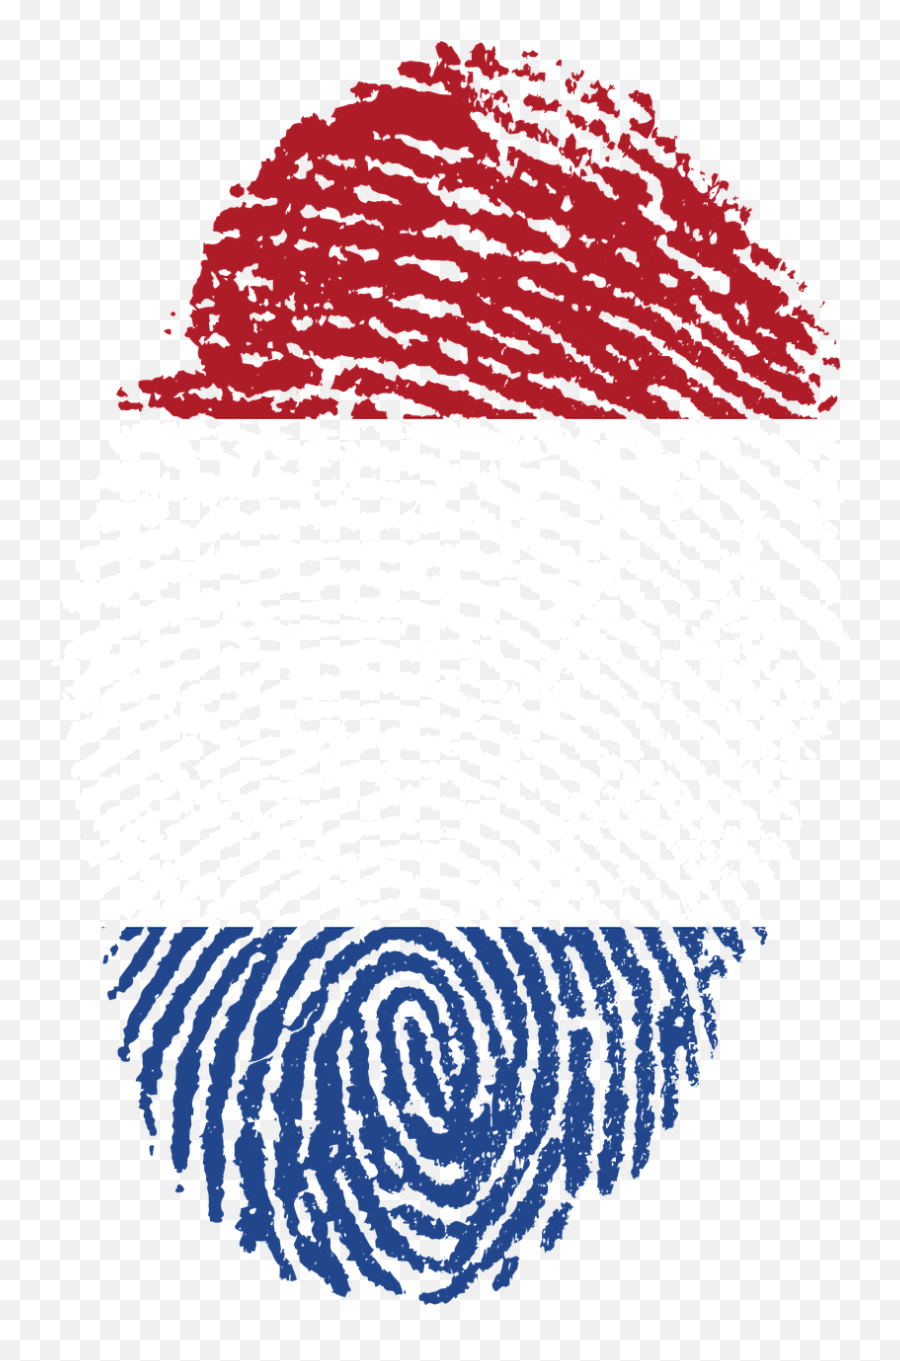 Netherlands Flag Fingerprint Country - Challenges Of Digital India ...